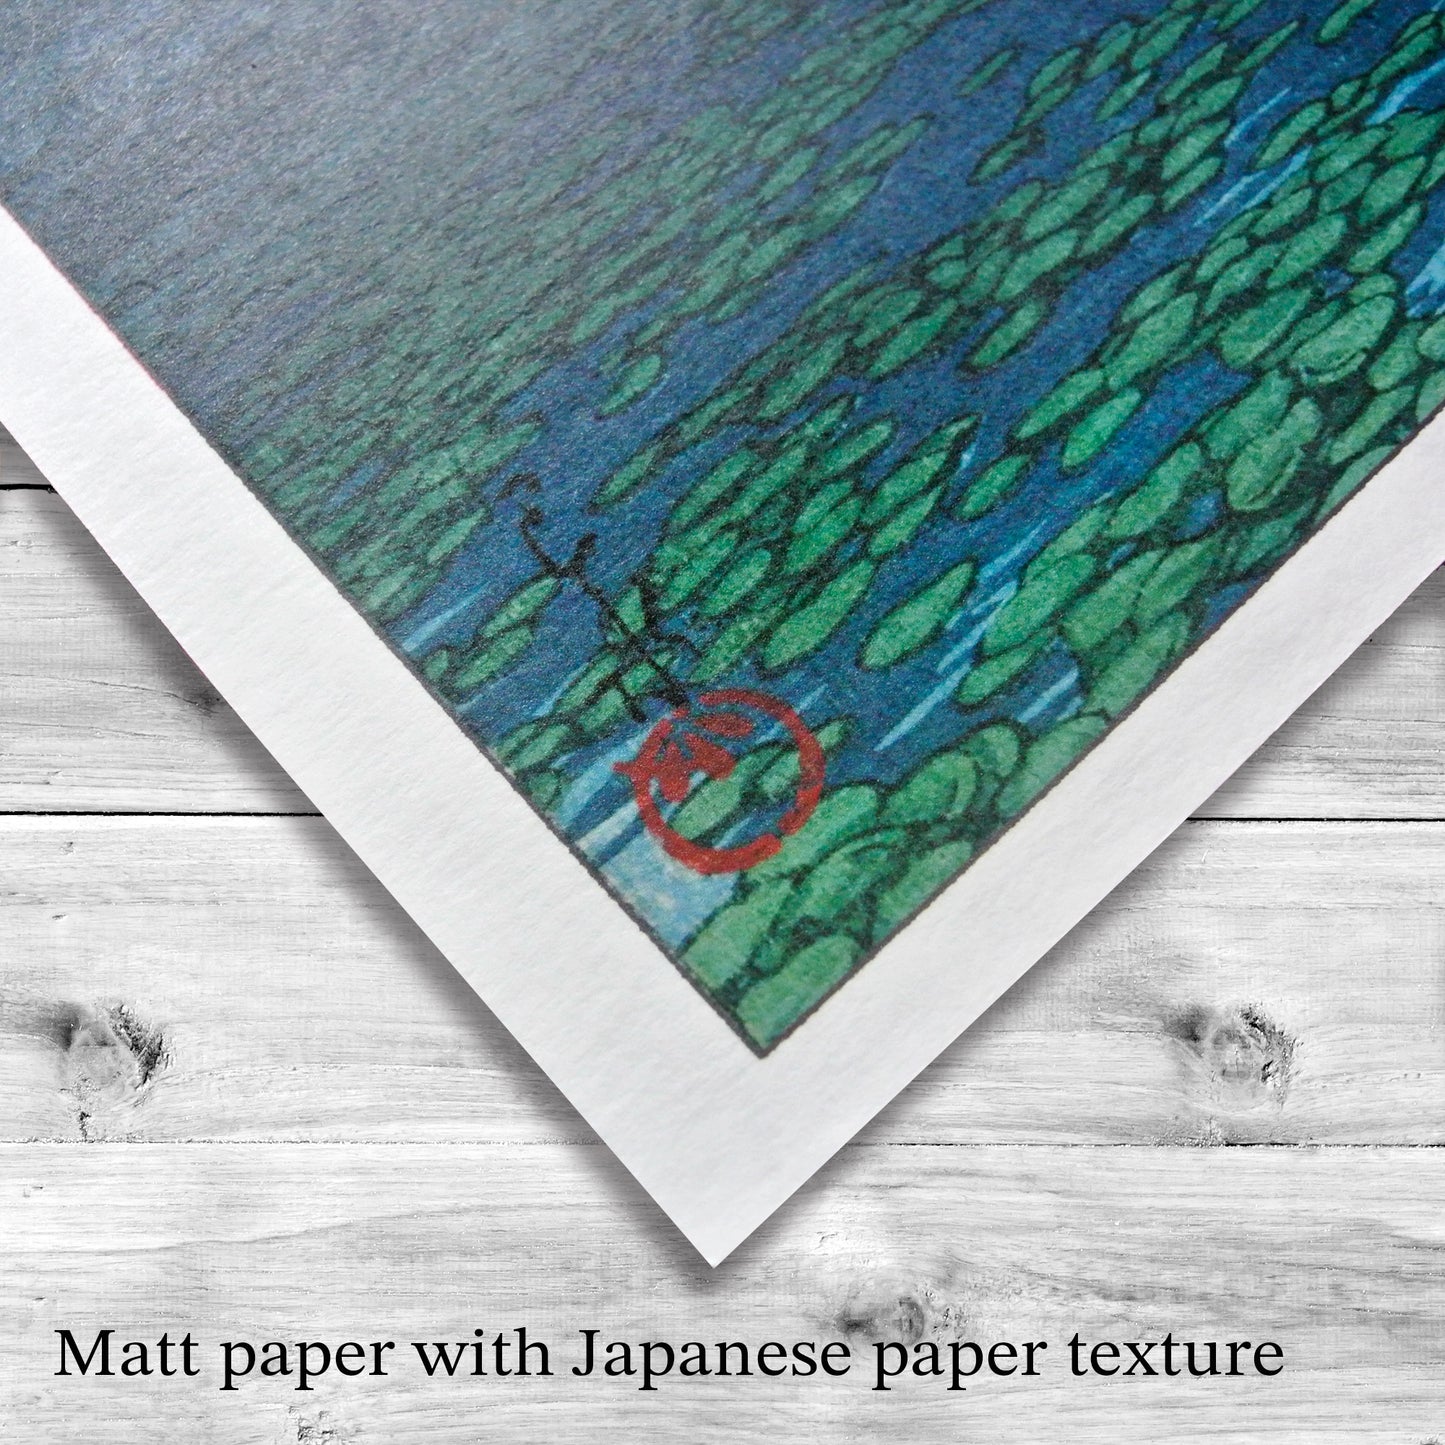 A set of 3 - Kawase Hasui ,Japanese Art, 12×18inches (11×17＋margin), Made in Japan,Woodblock Print, Ukiyo-e, Shipping free